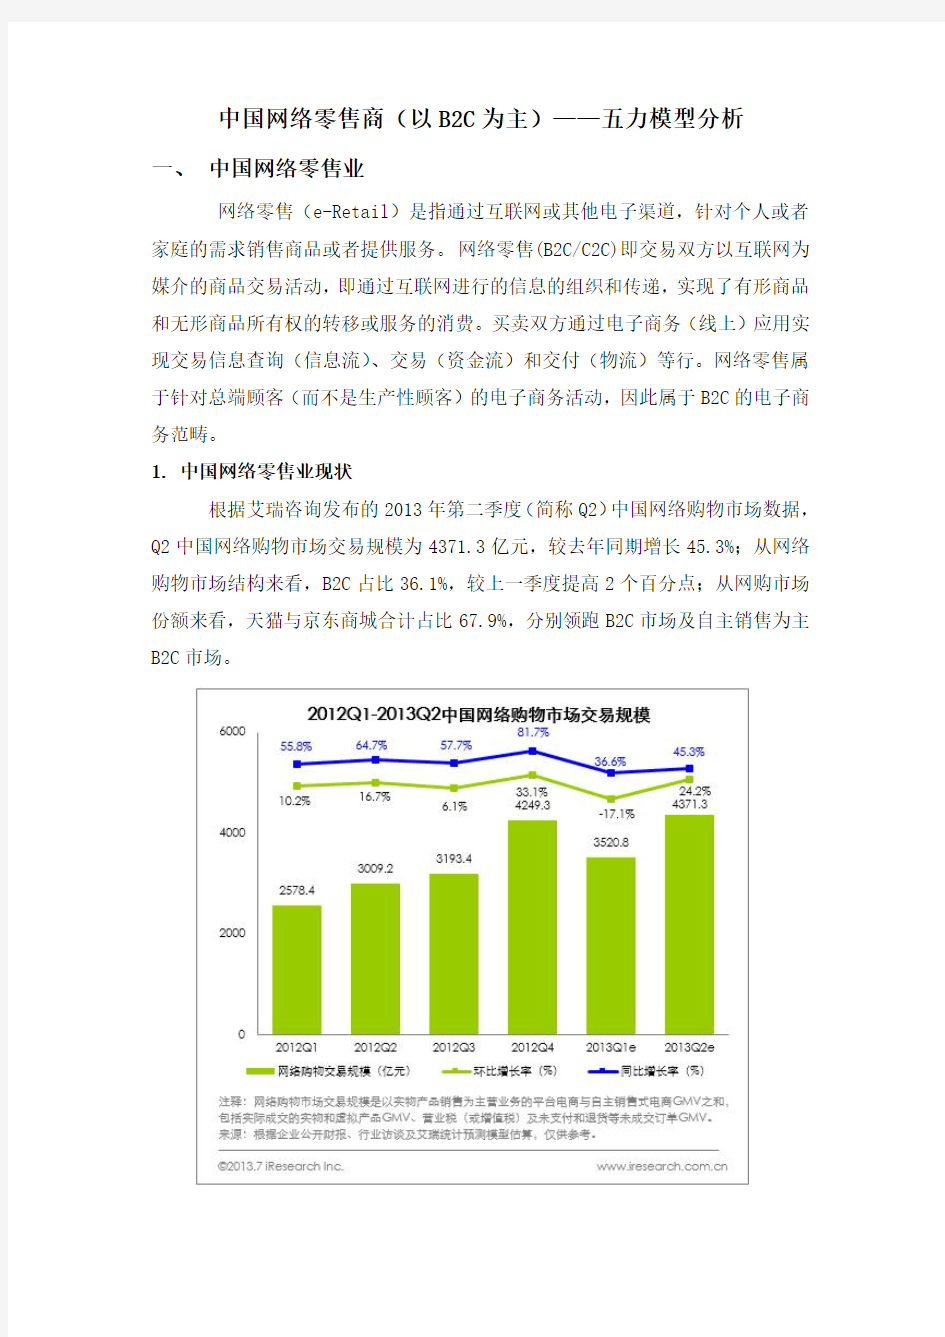 中国网络零售商(以B2C为主)—波特五力模型分析